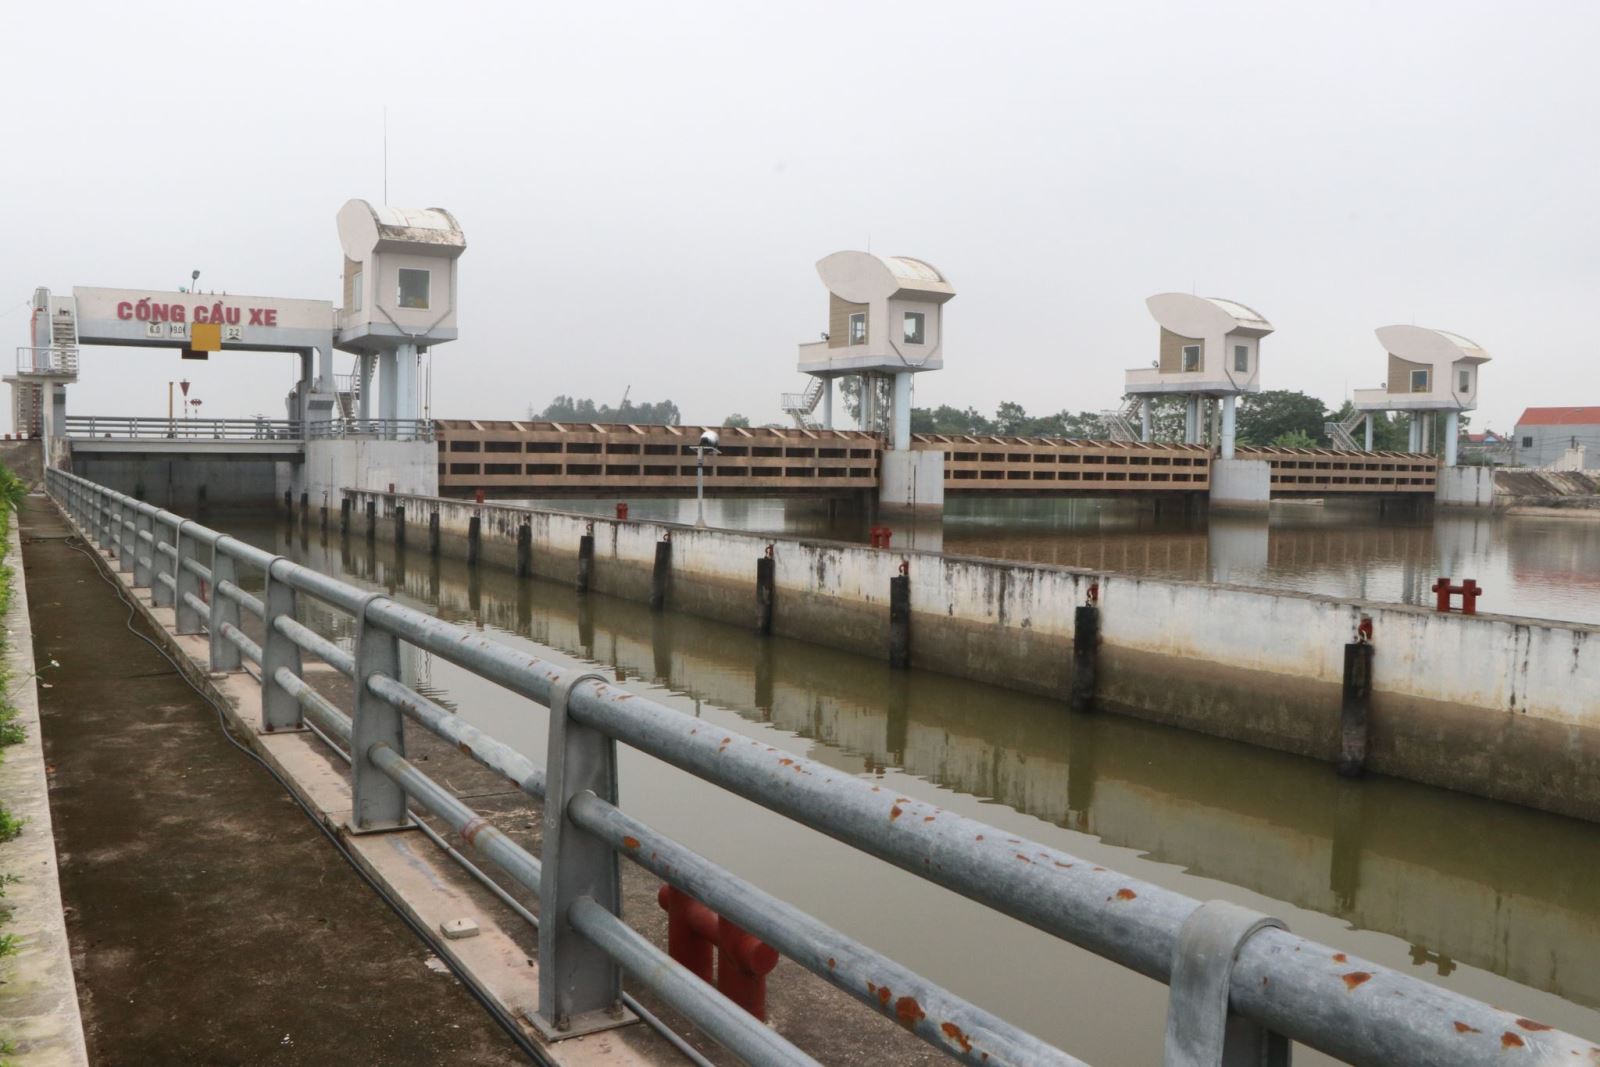 Quyết liệt đẩy lùi tình trạng ô nhiễm nguồn nước trên hệ thống thủy lợi Bắc Hưng Hải